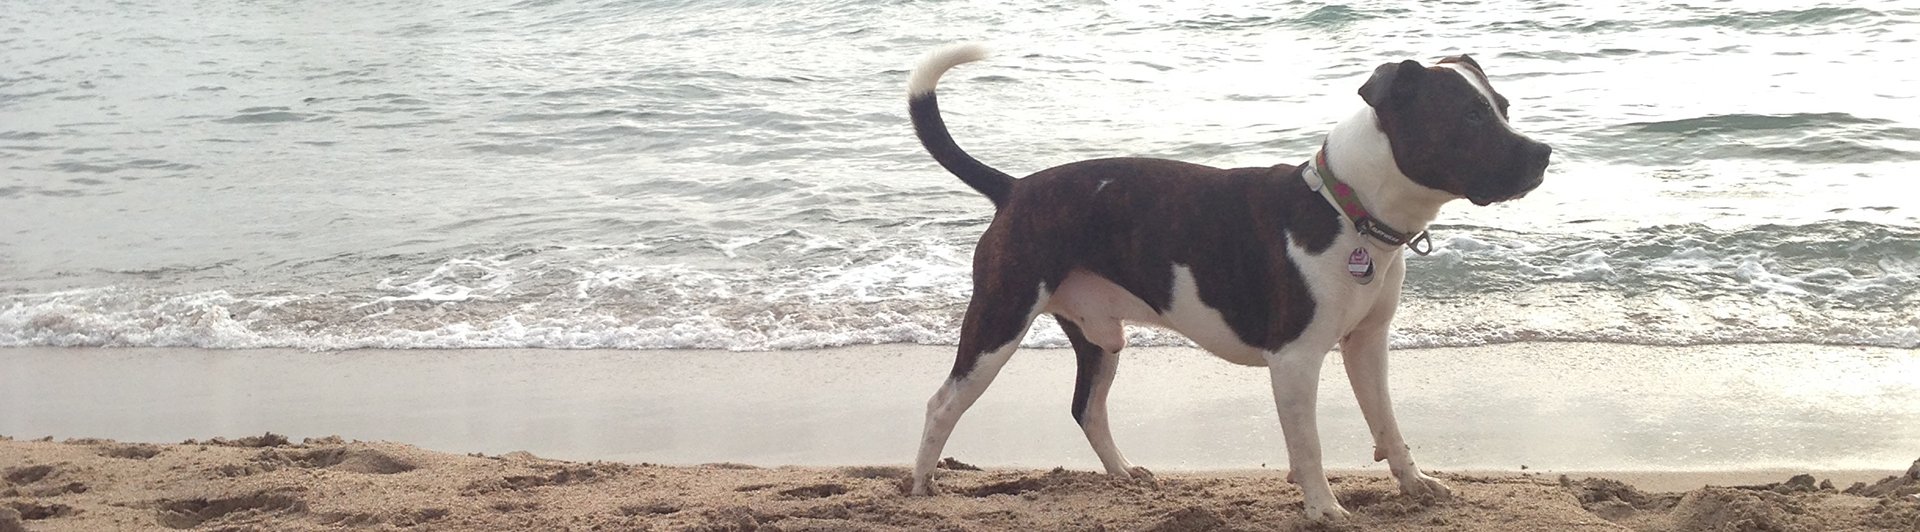 Microthedog at the beach